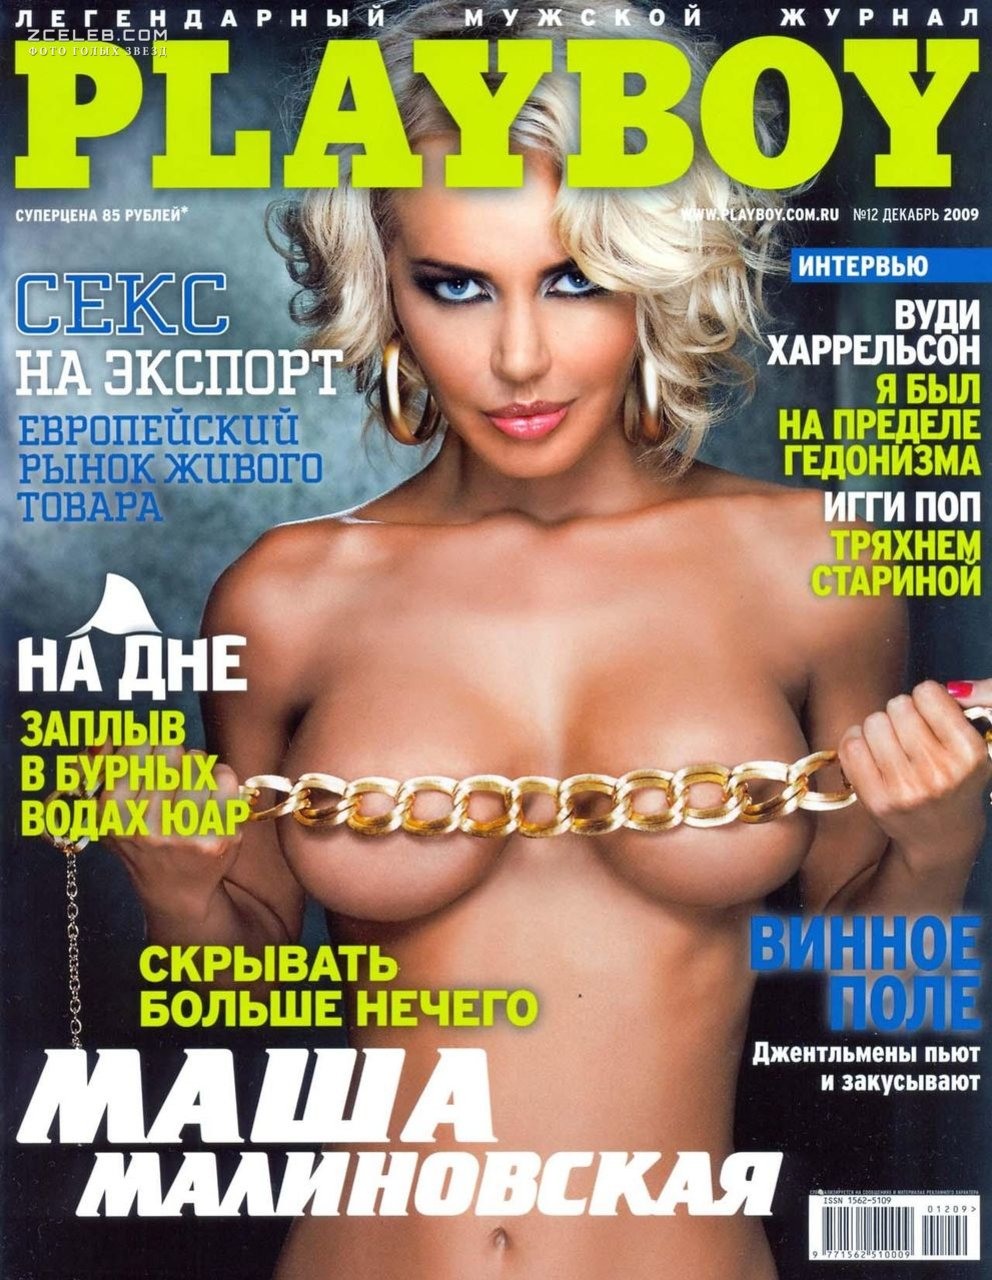 Мужской журнал эротический - фото обнаженных и голых девушек